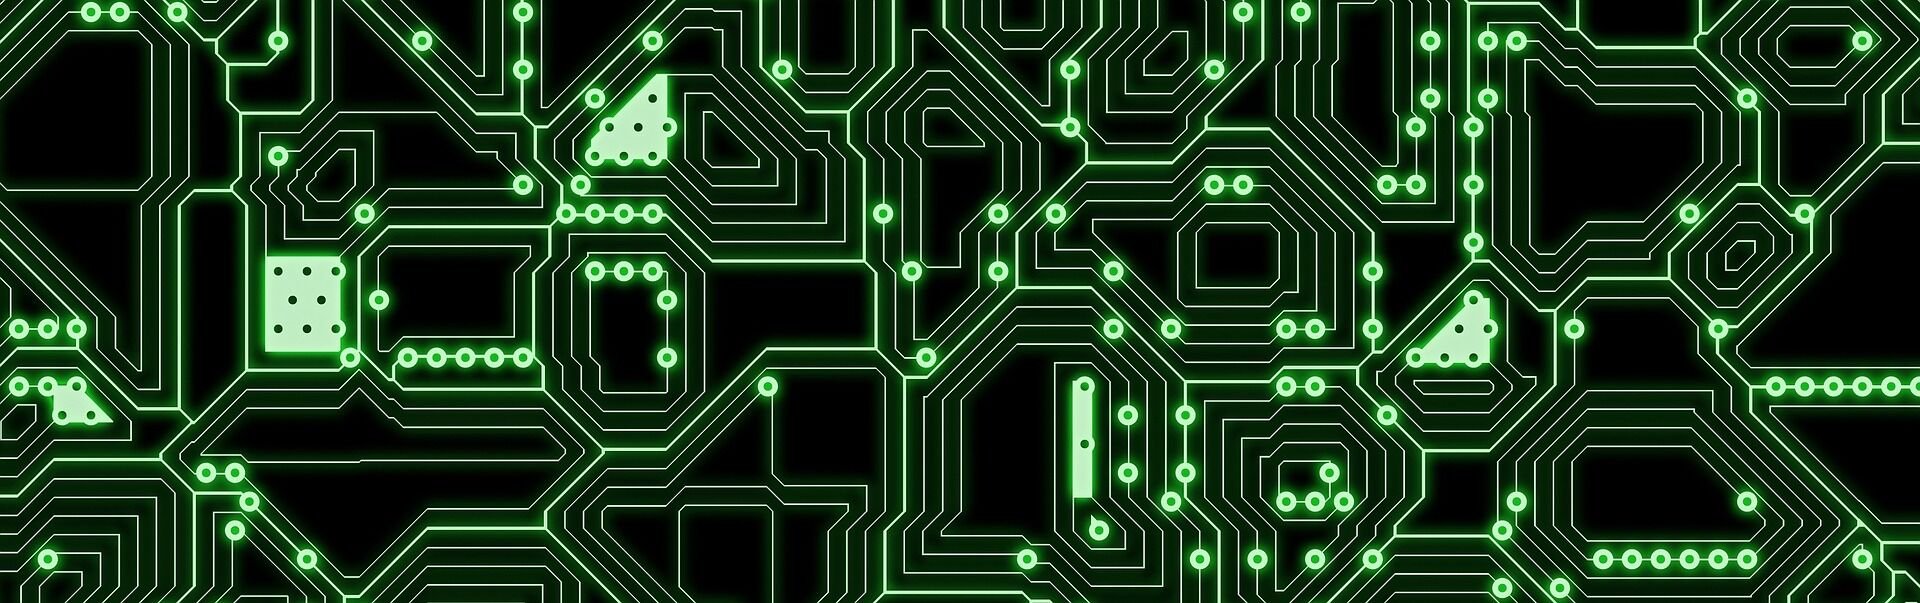 circuit board in green